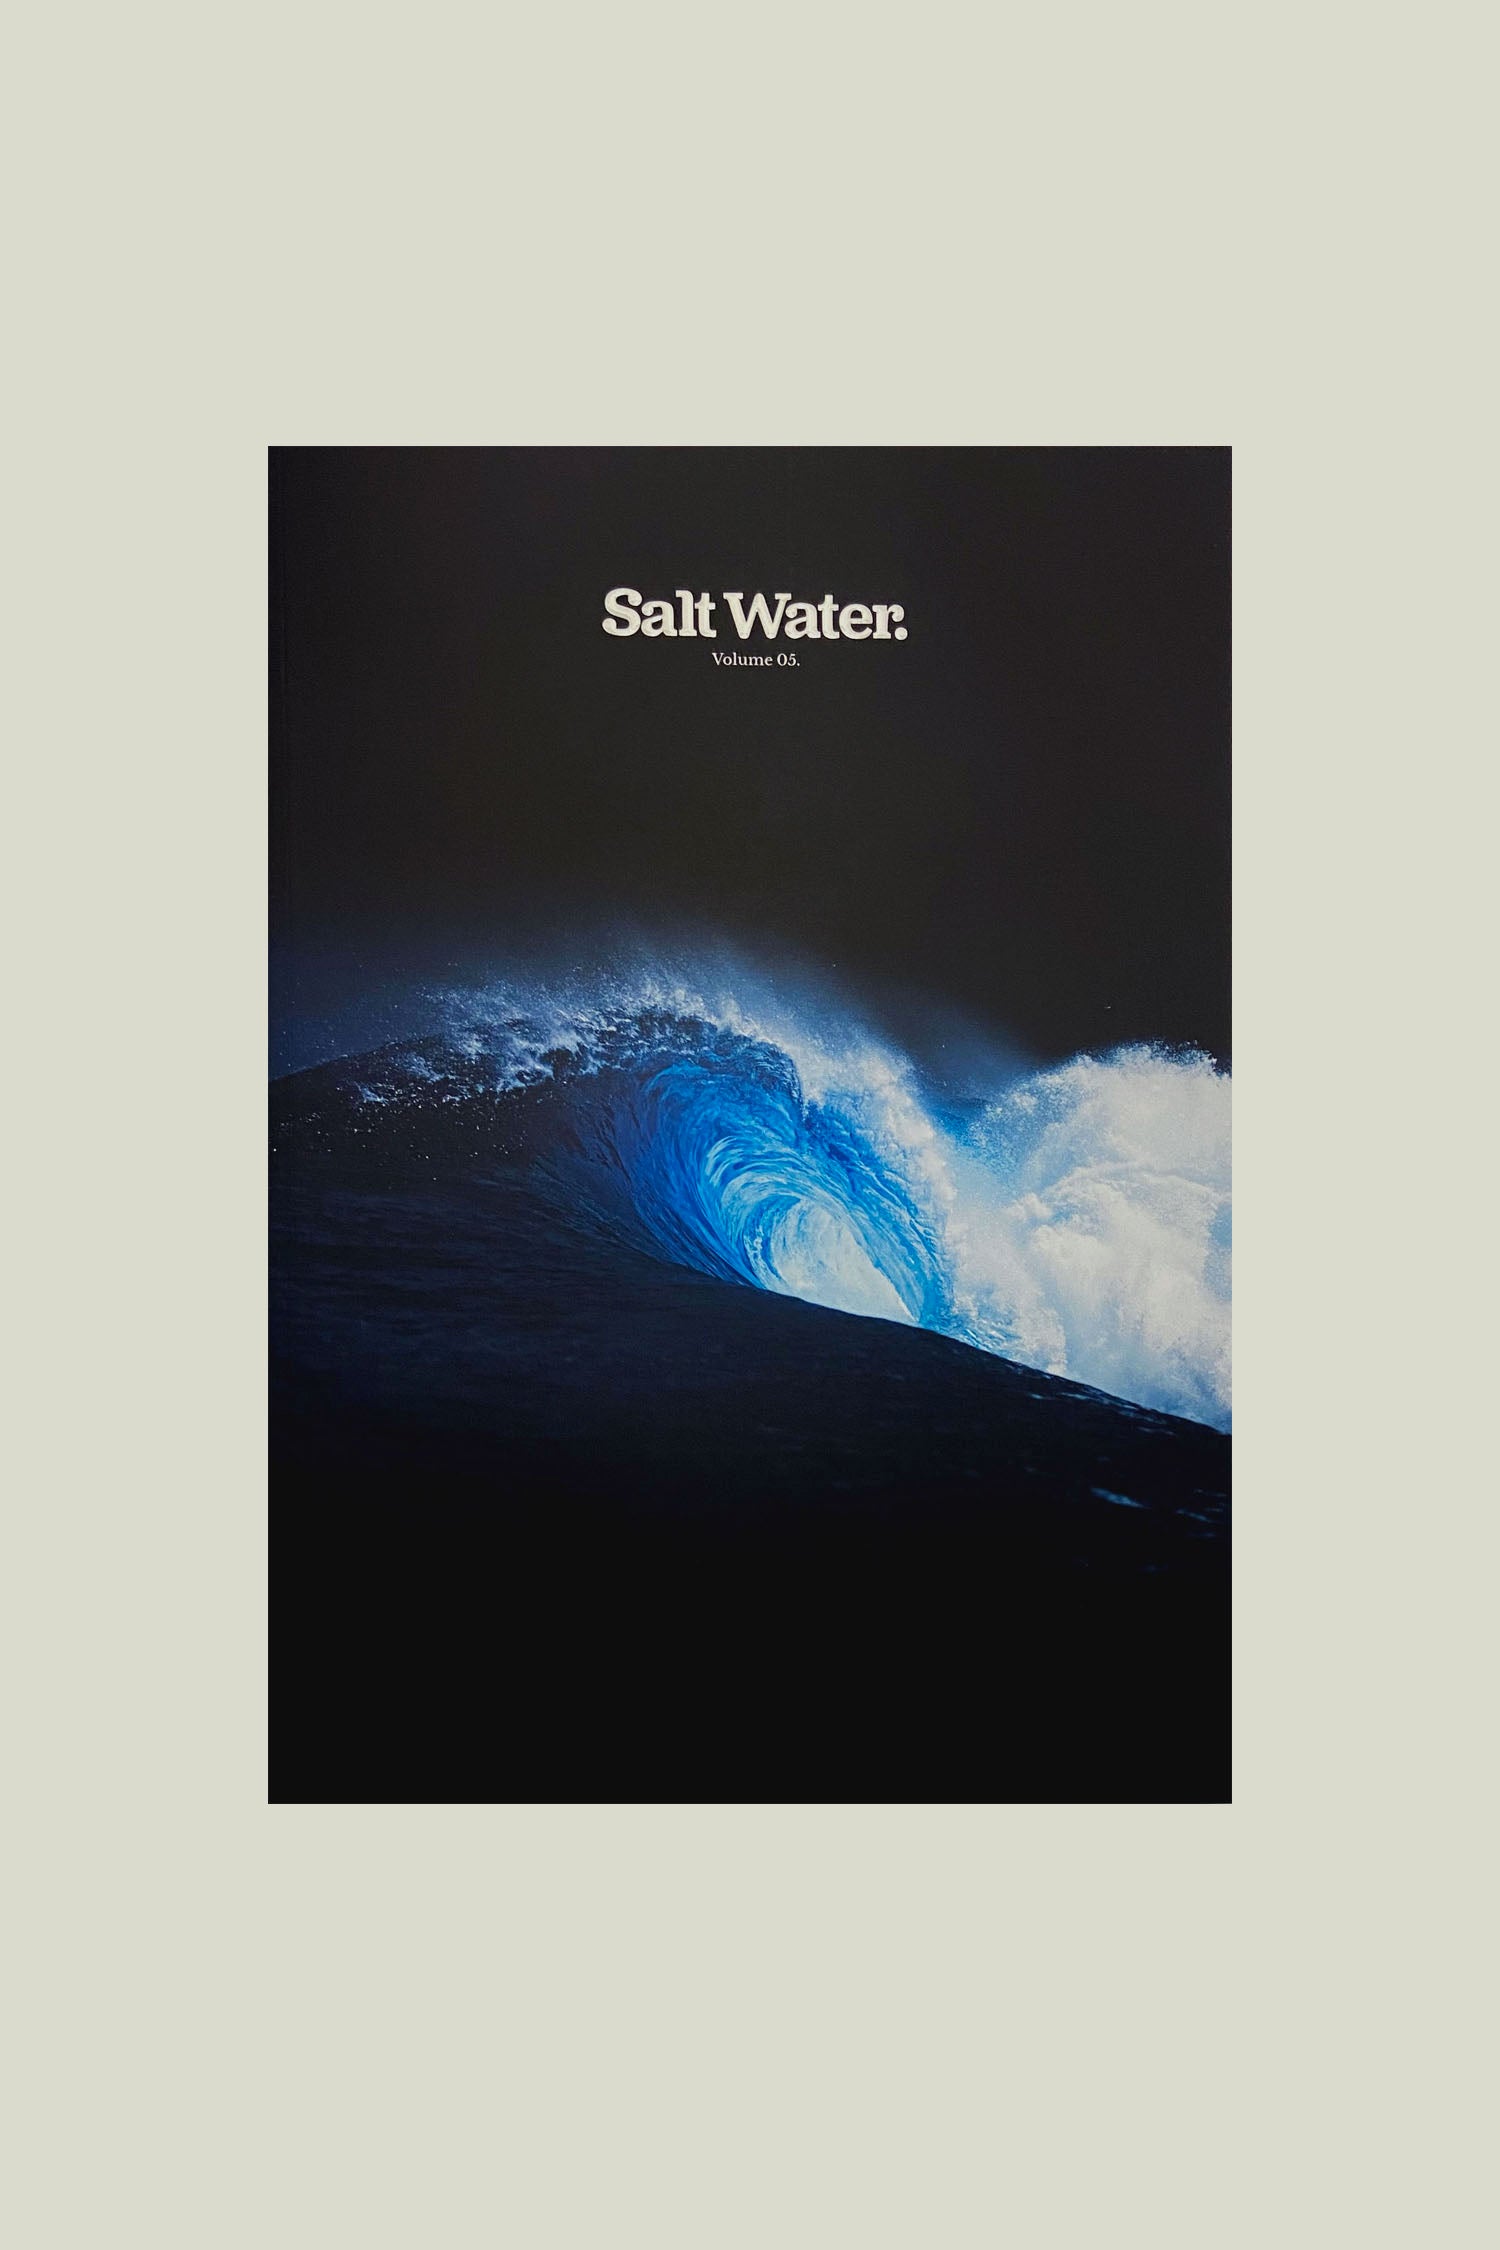 Salt water magazine Vol.5